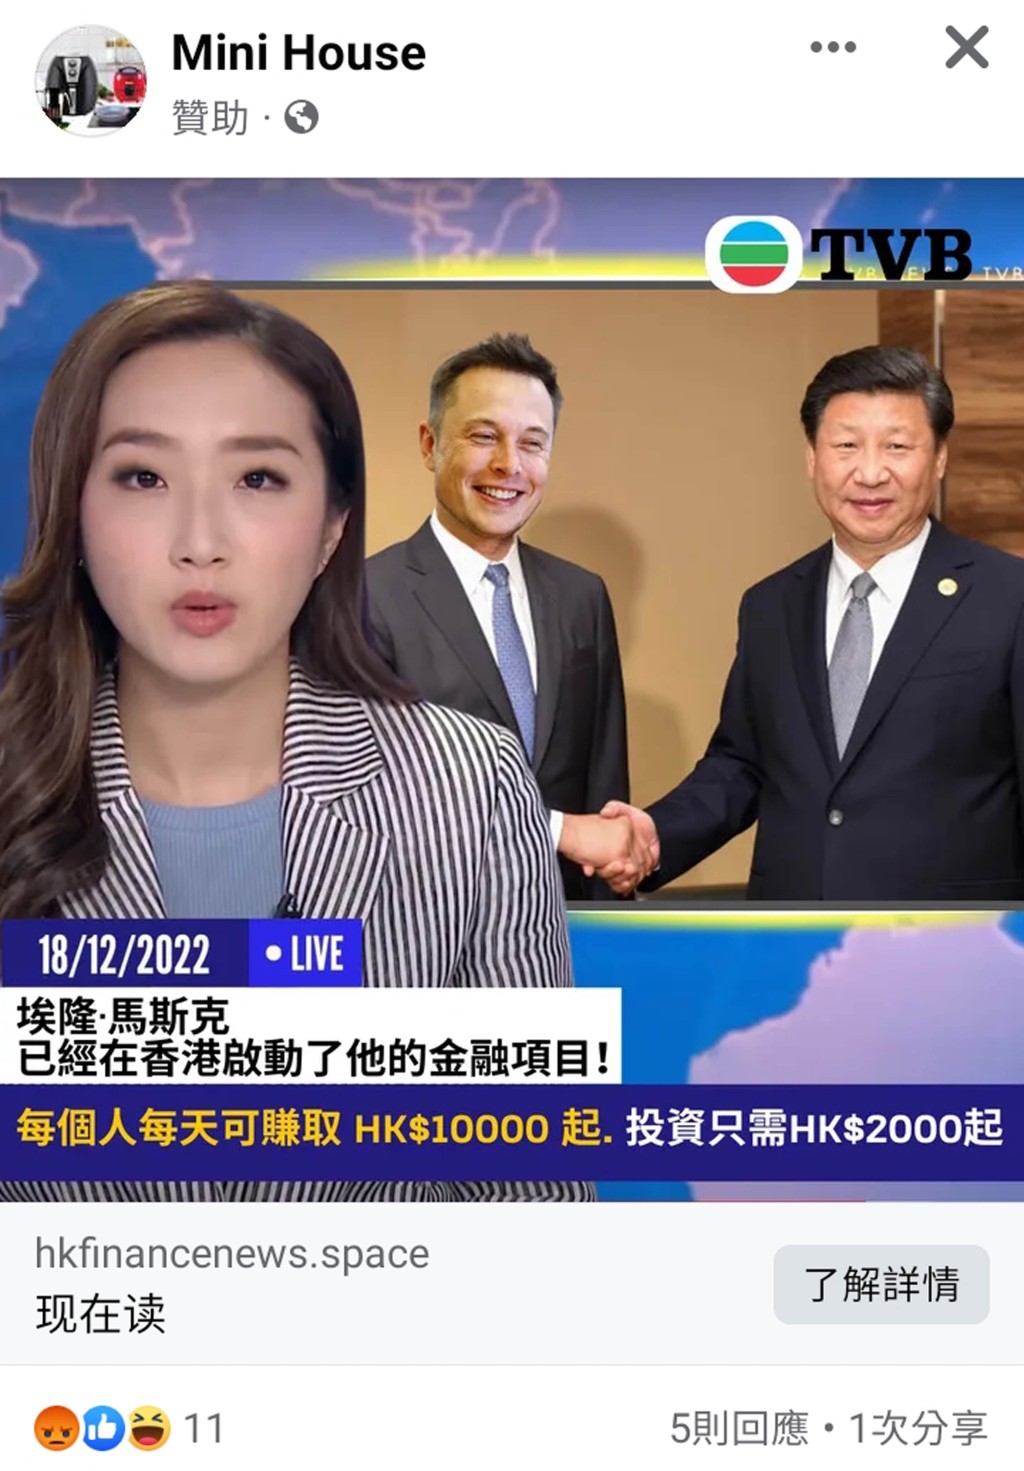 騙徒製作馬斯克與中國國家主席習近平握手的虛假照片，企圖欺騙公眾投資款項。  網上圖片